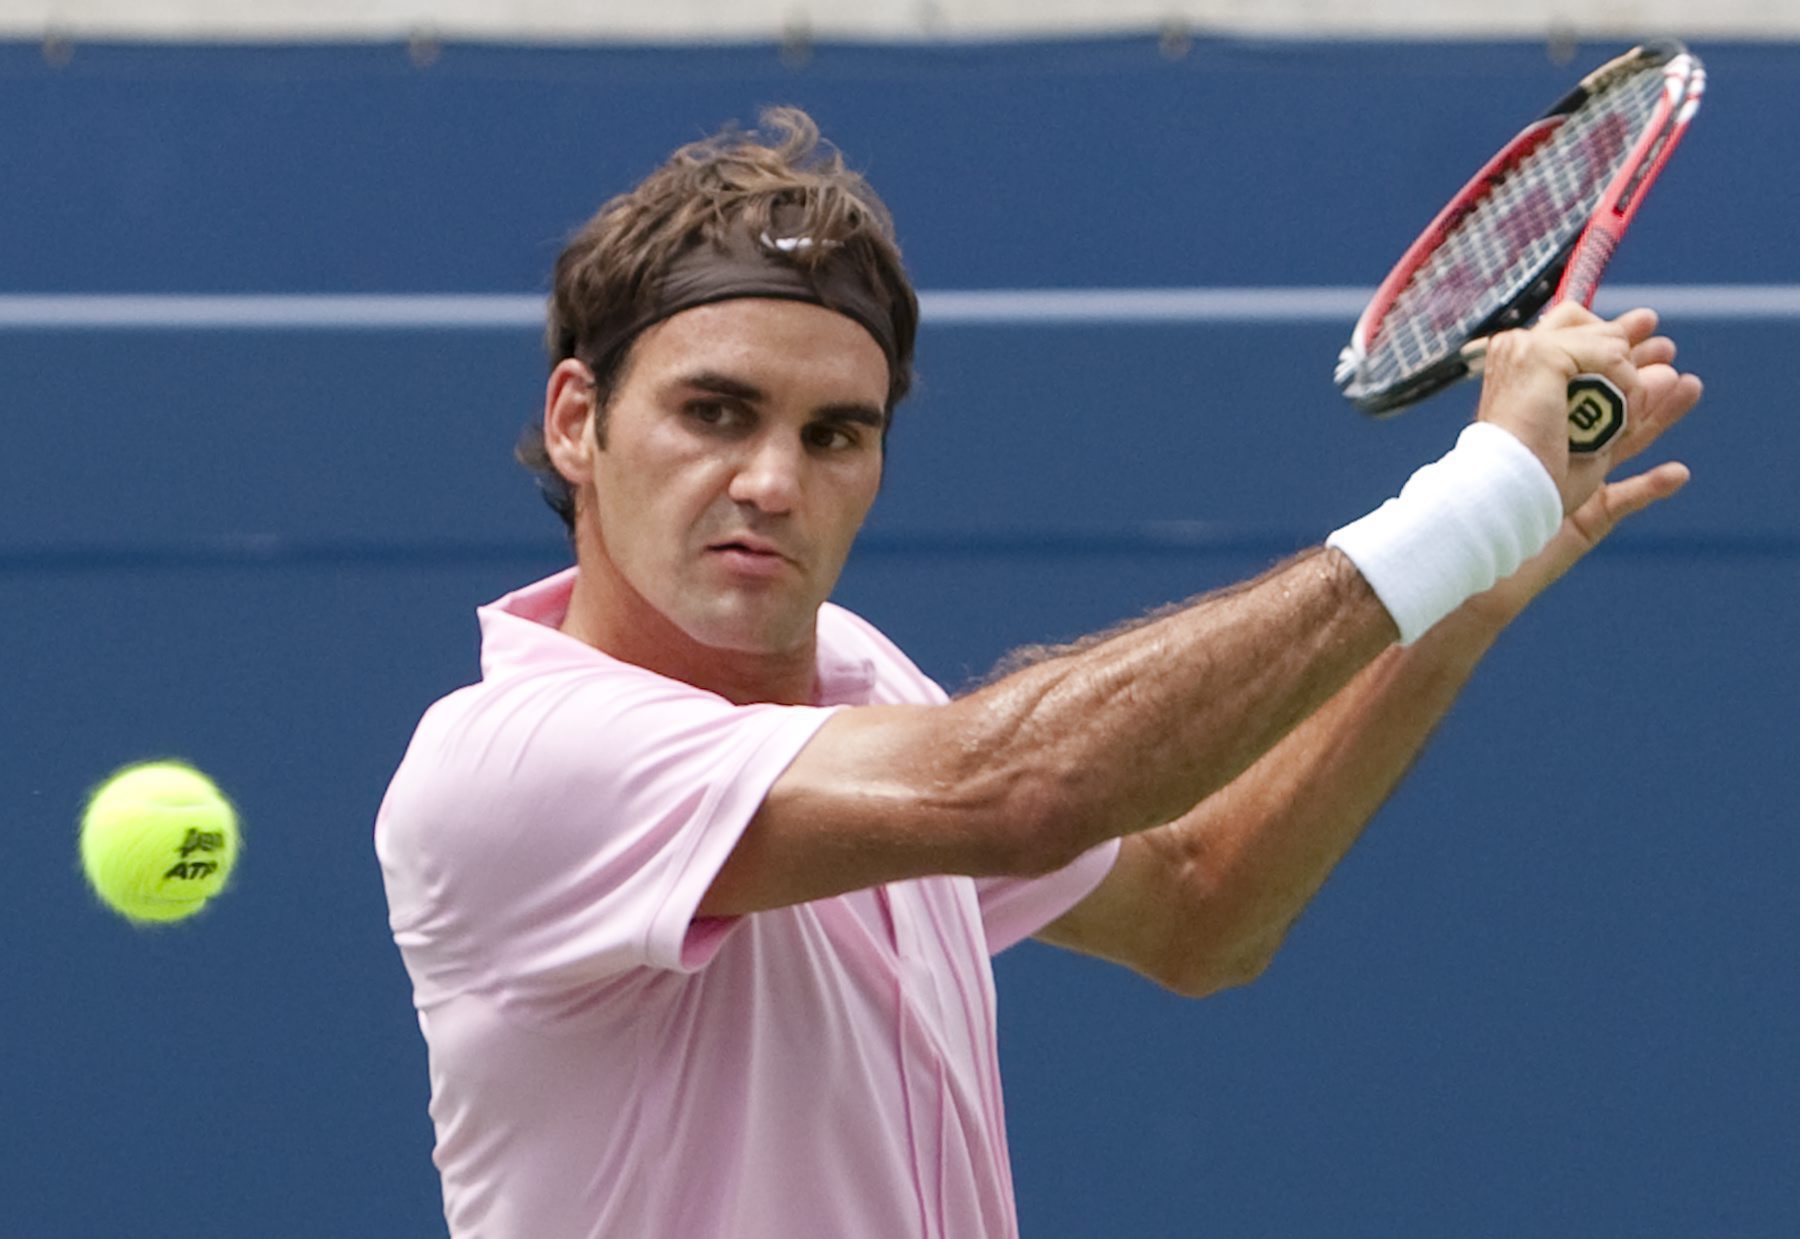 Tennis, Roger Federer, Stockholm Open